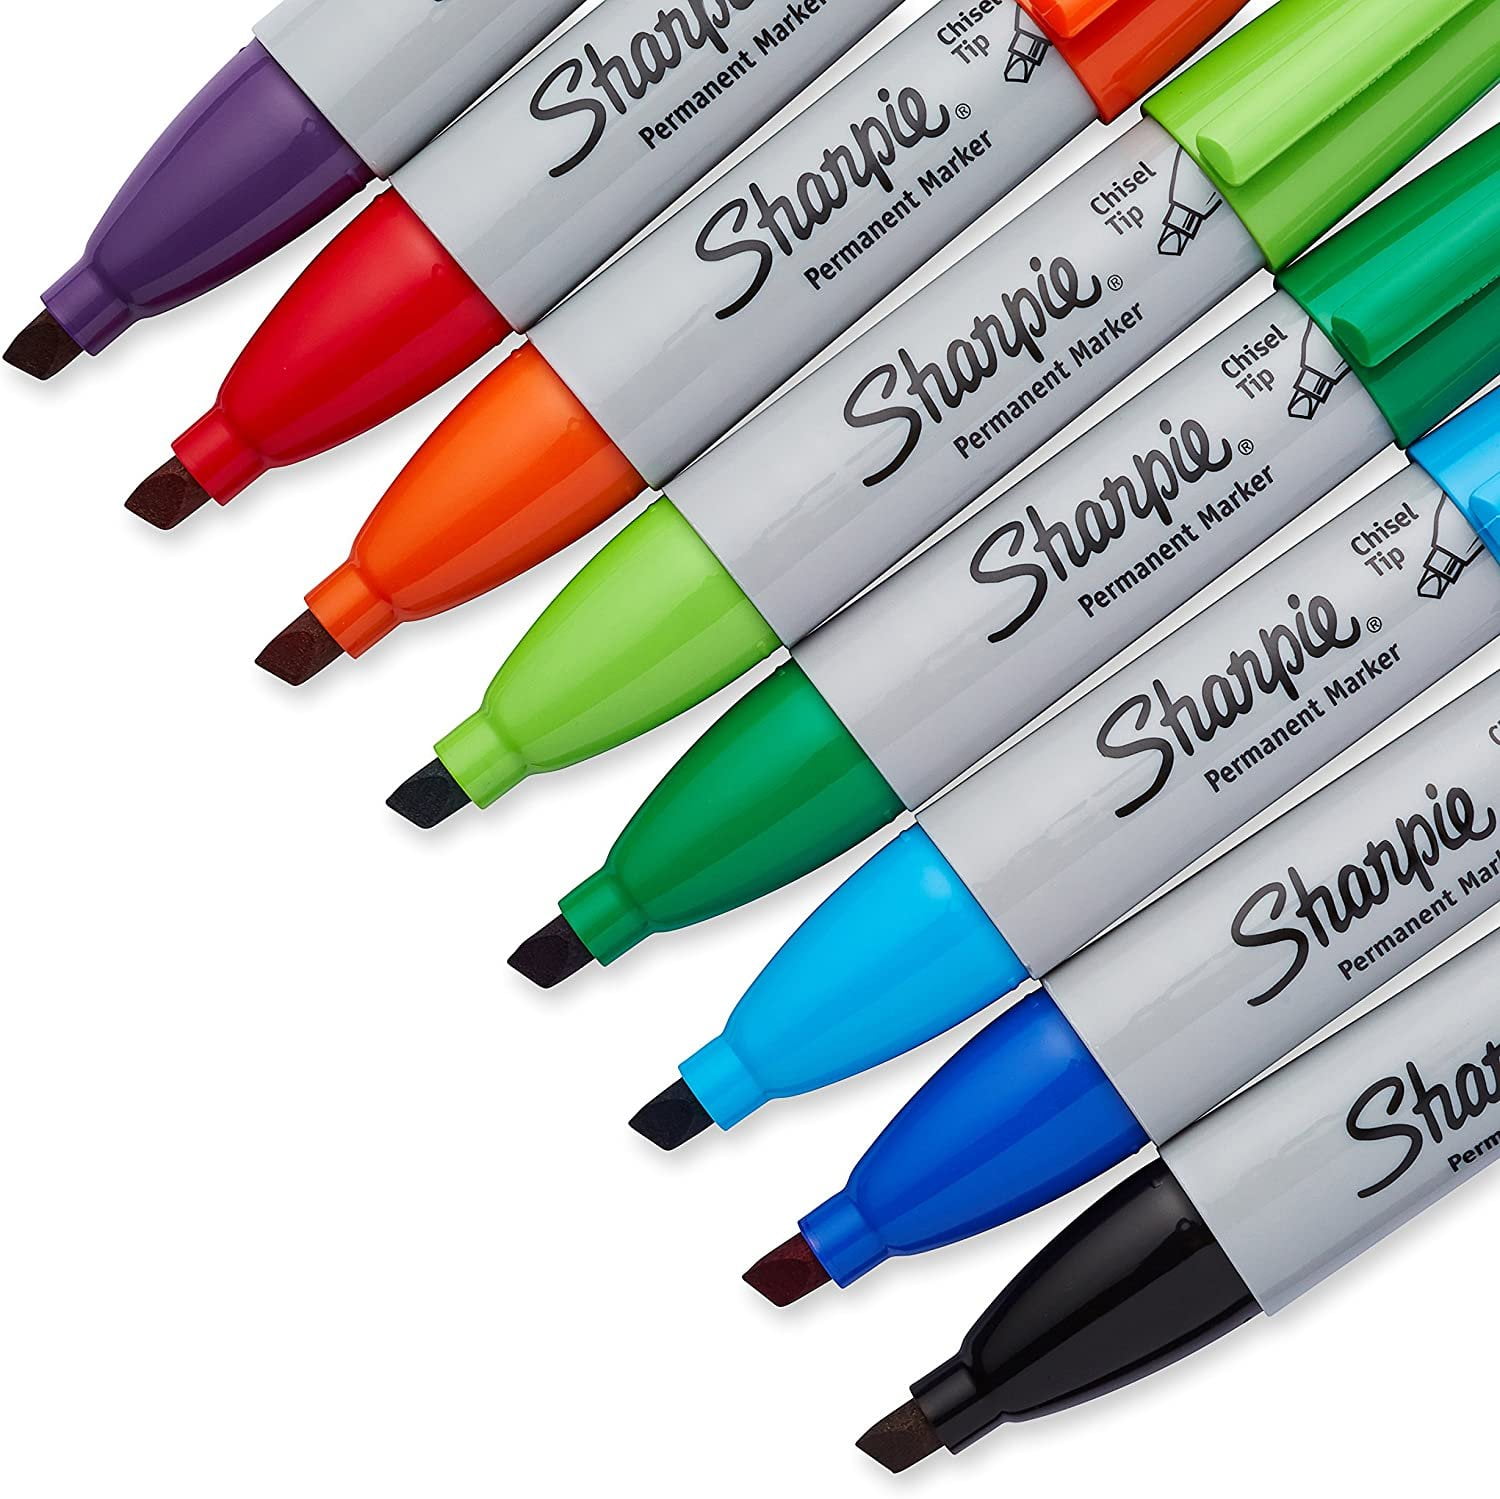 Huge Deals on Sharpie Permanent Marker at Bulk Pricing